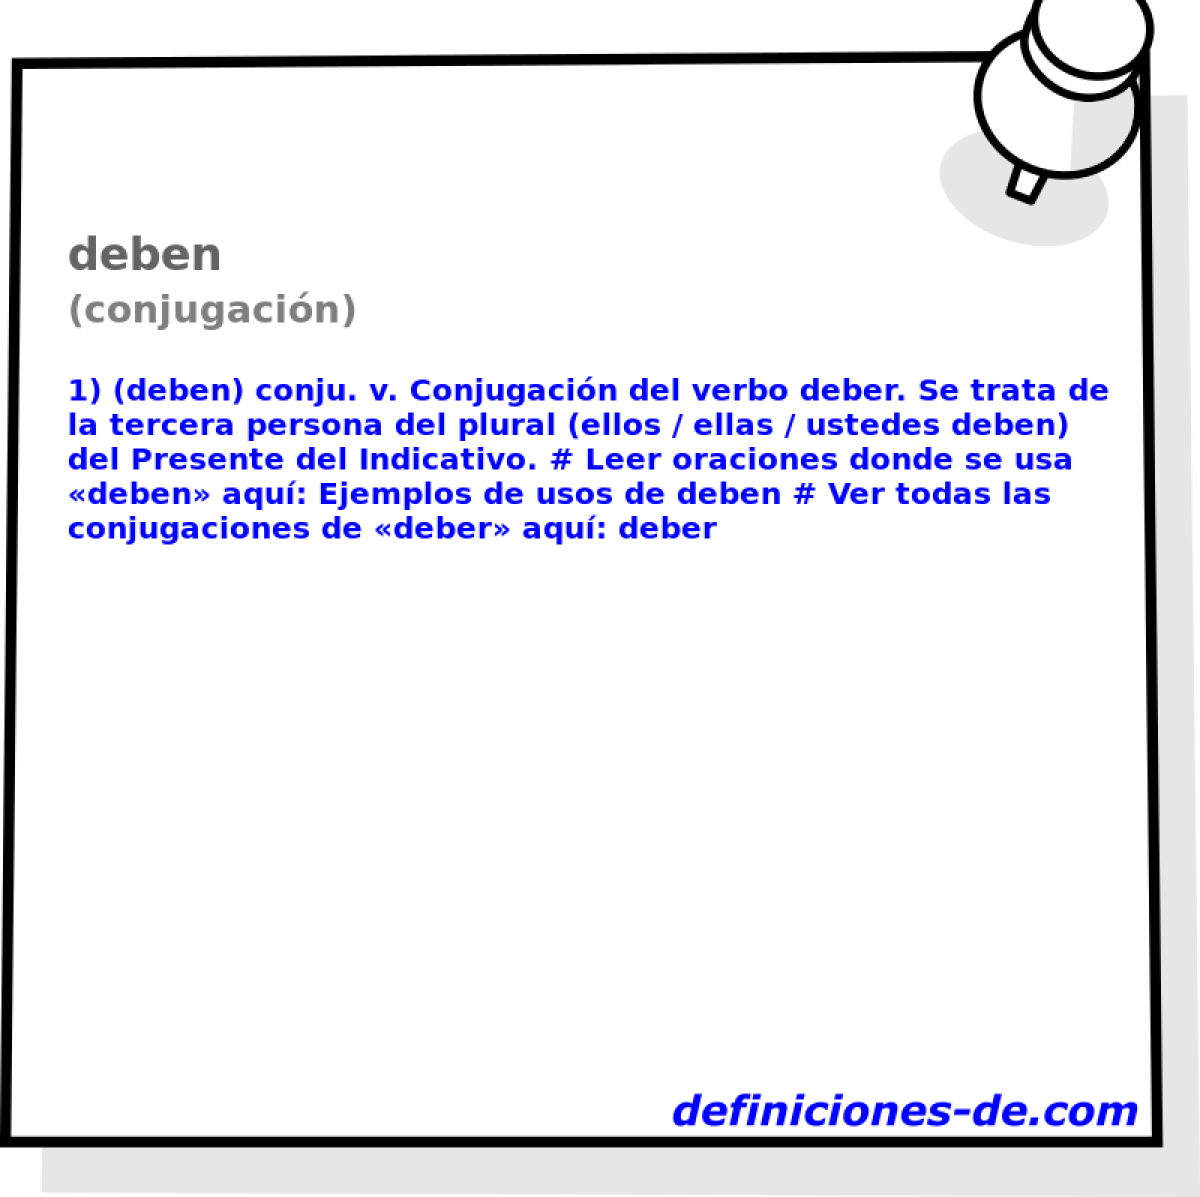 deben (conjugacin)